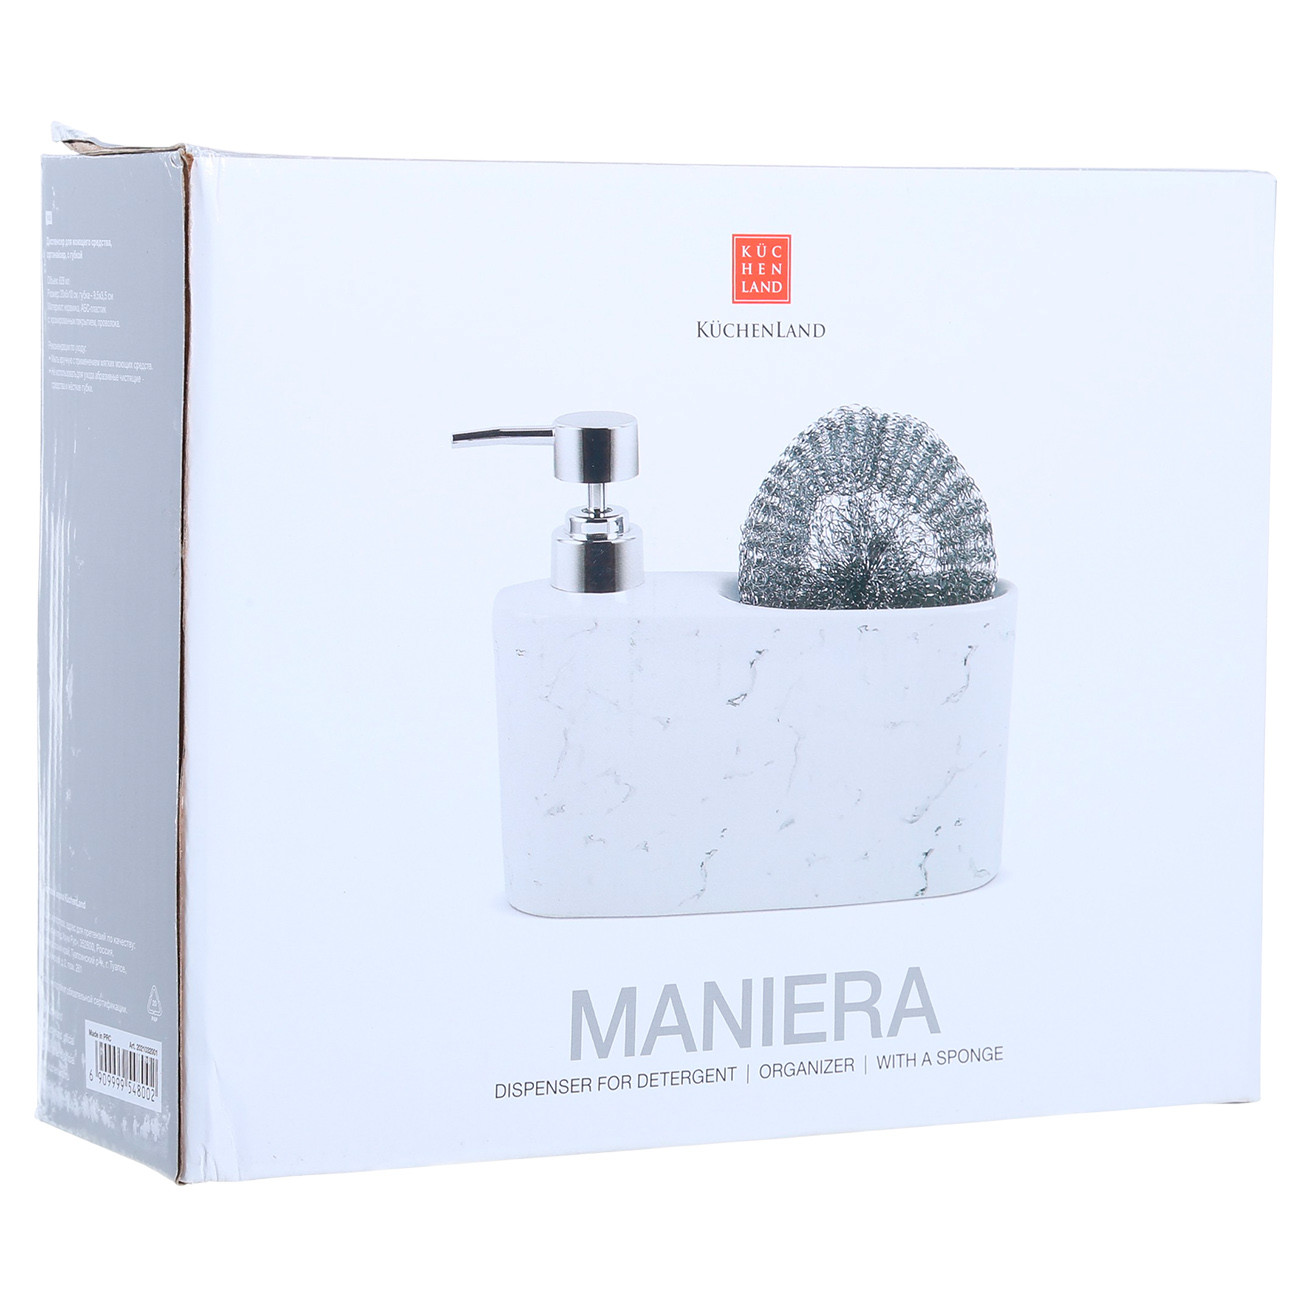 Detergent dispenser, 628 ml, organizer, with sponge, ceramic, White, Maniera изображение № 4